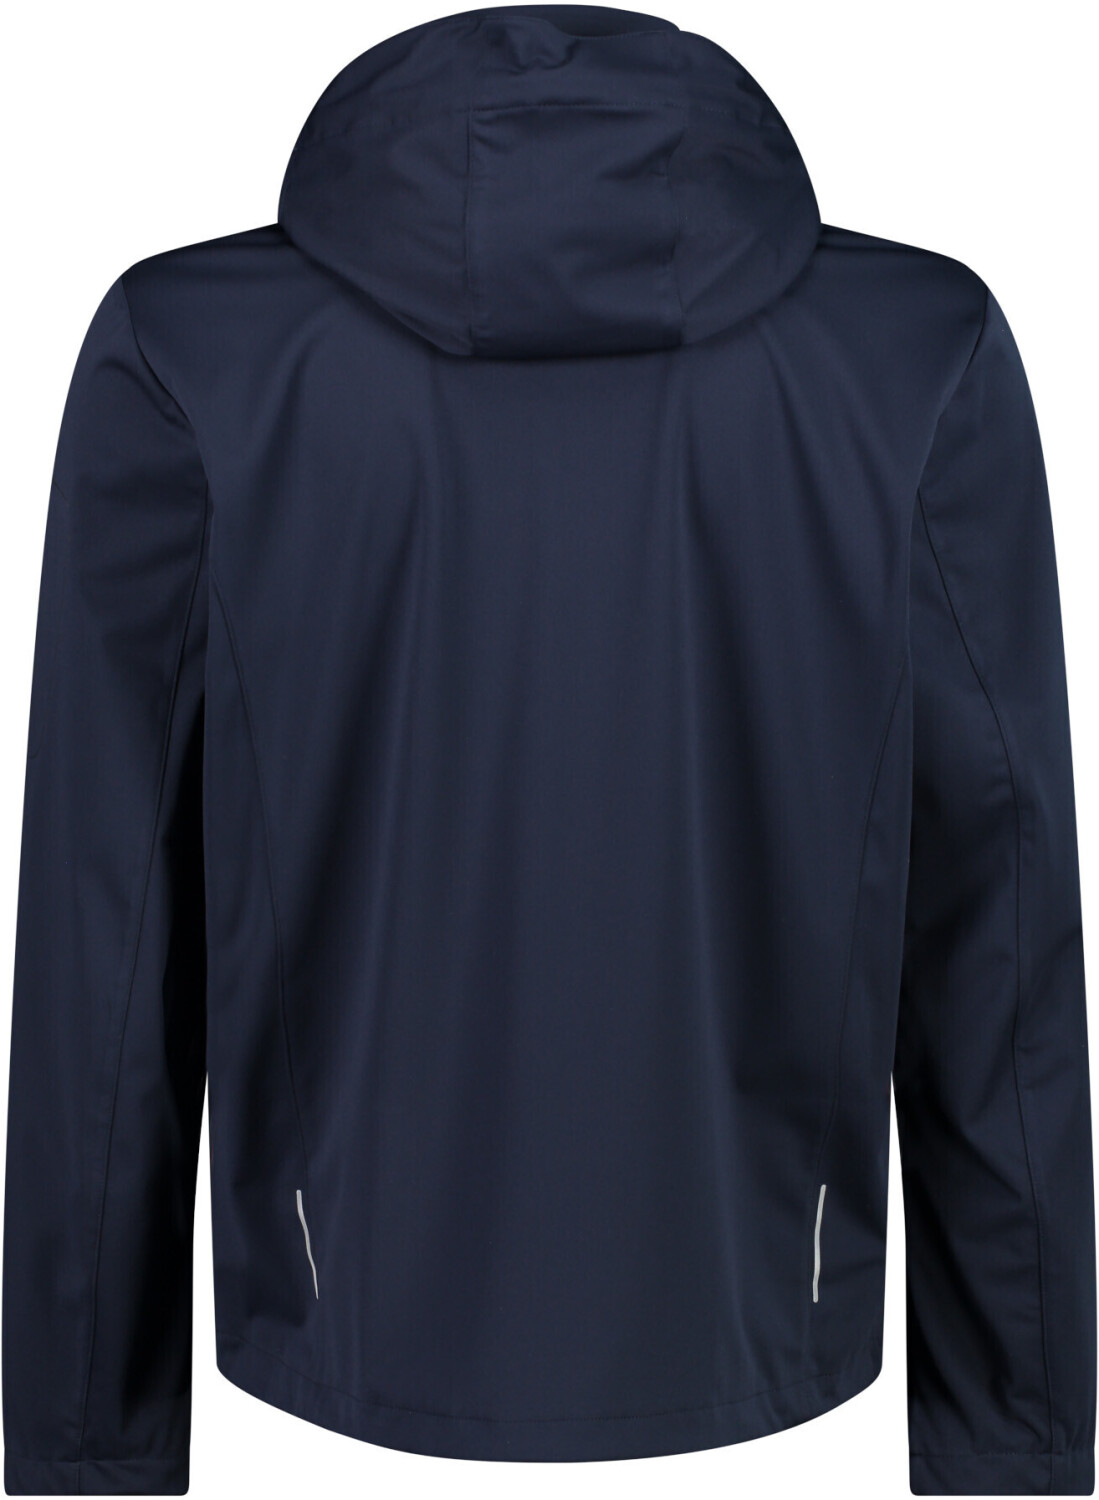 Preisvergleich b.blue-limegreen bei Jacket | Zip (39A5027) Hood ab Man 48,81 CMP €